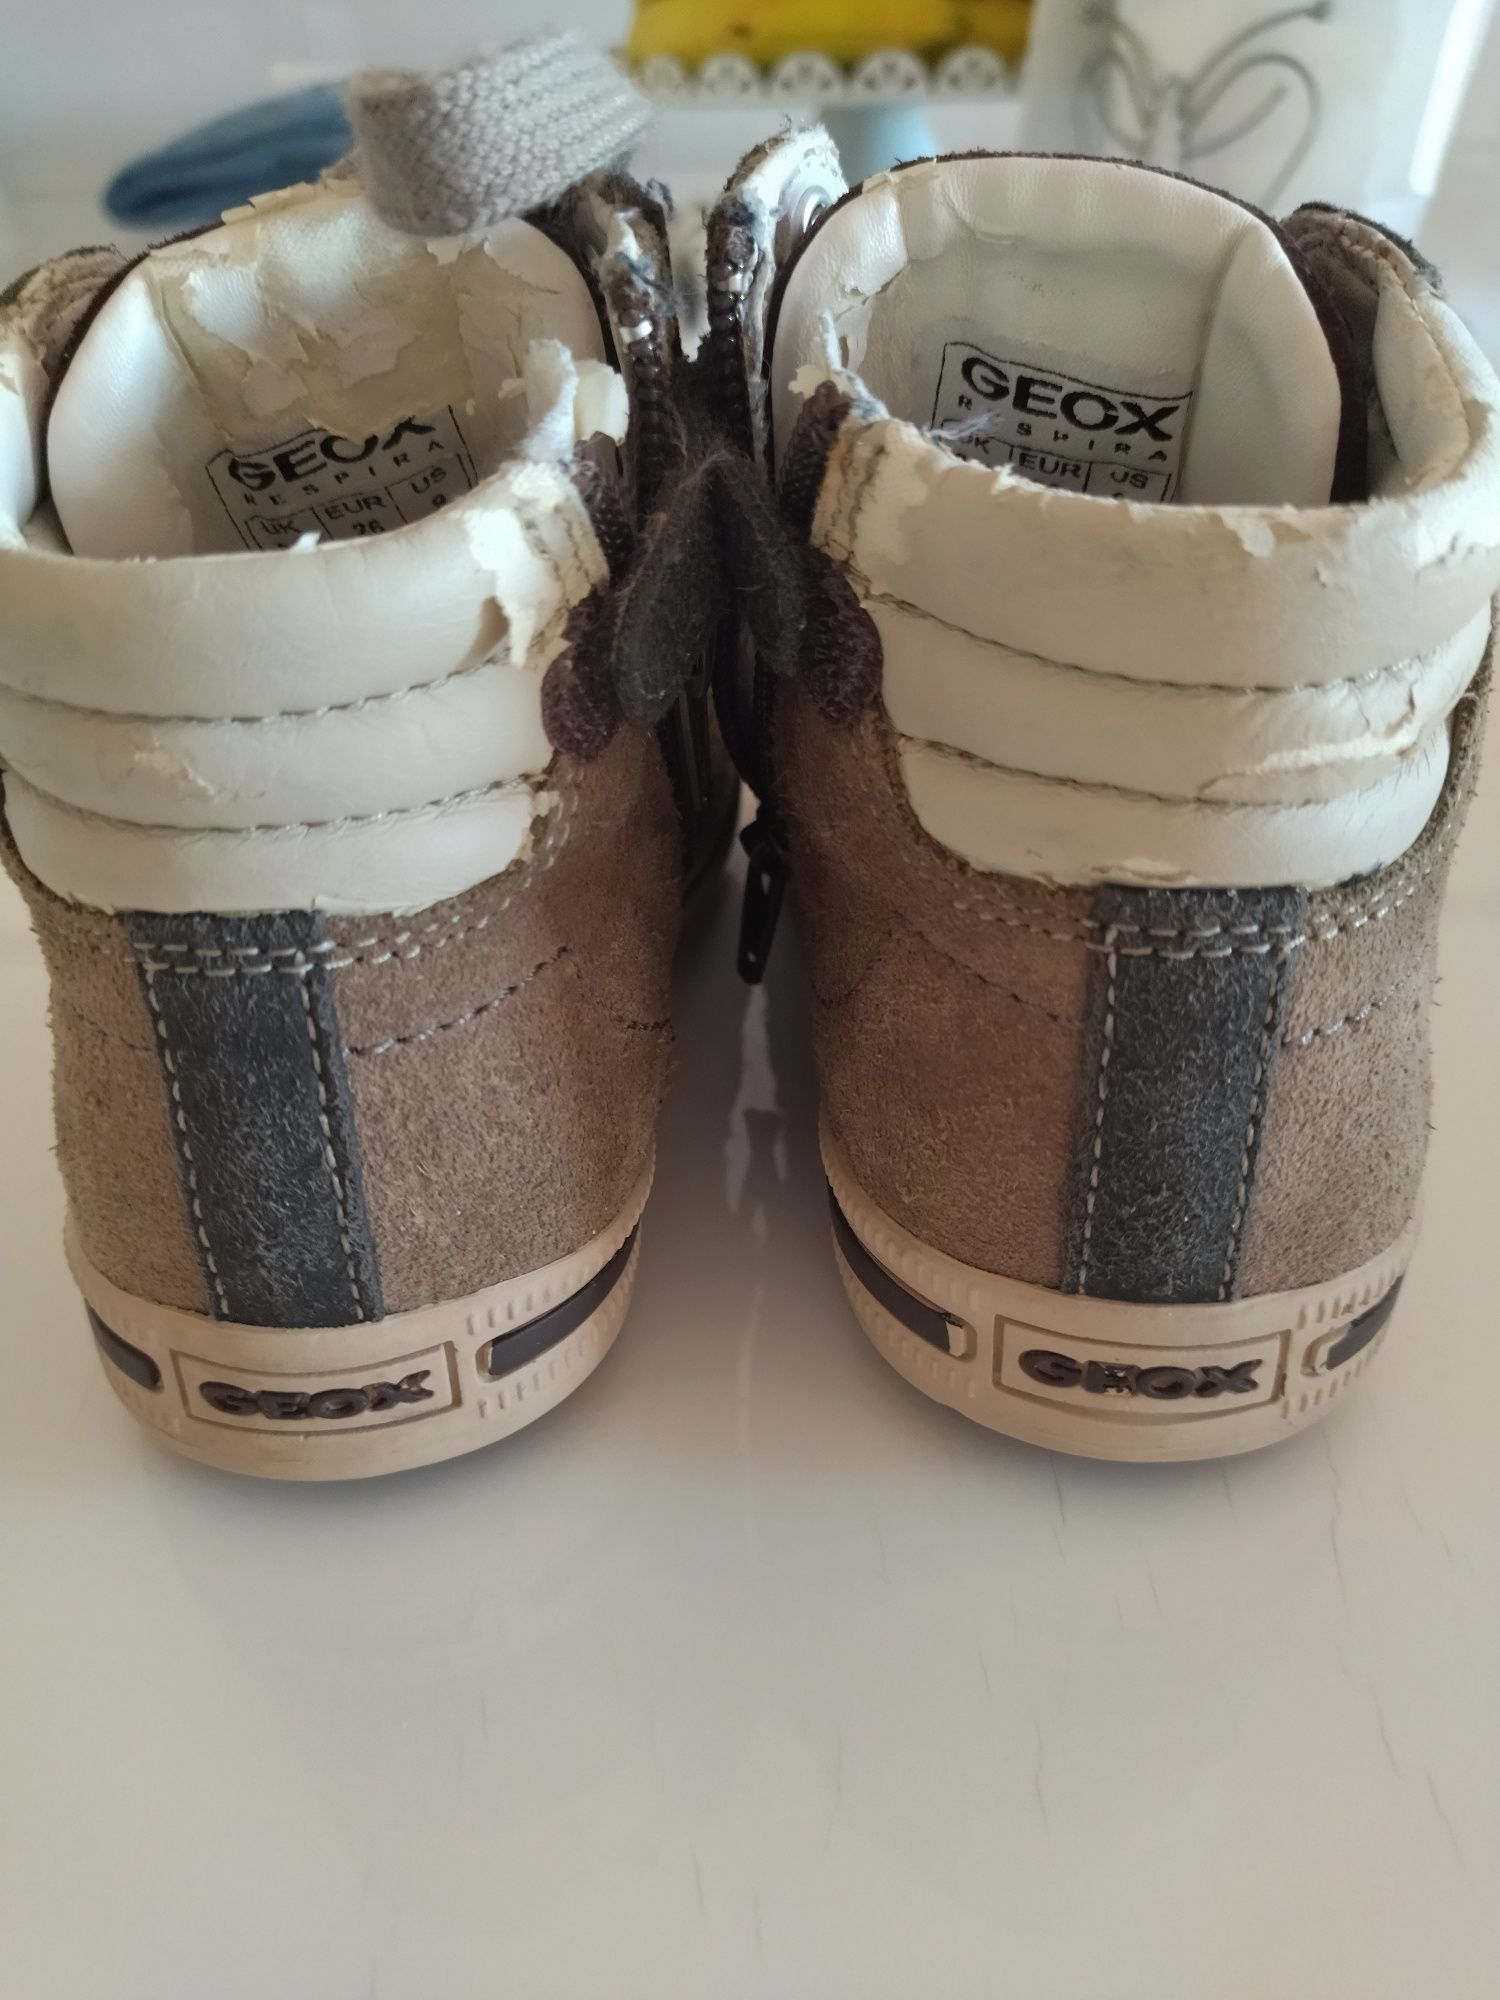 Geox - Tenis bota tamanho 26